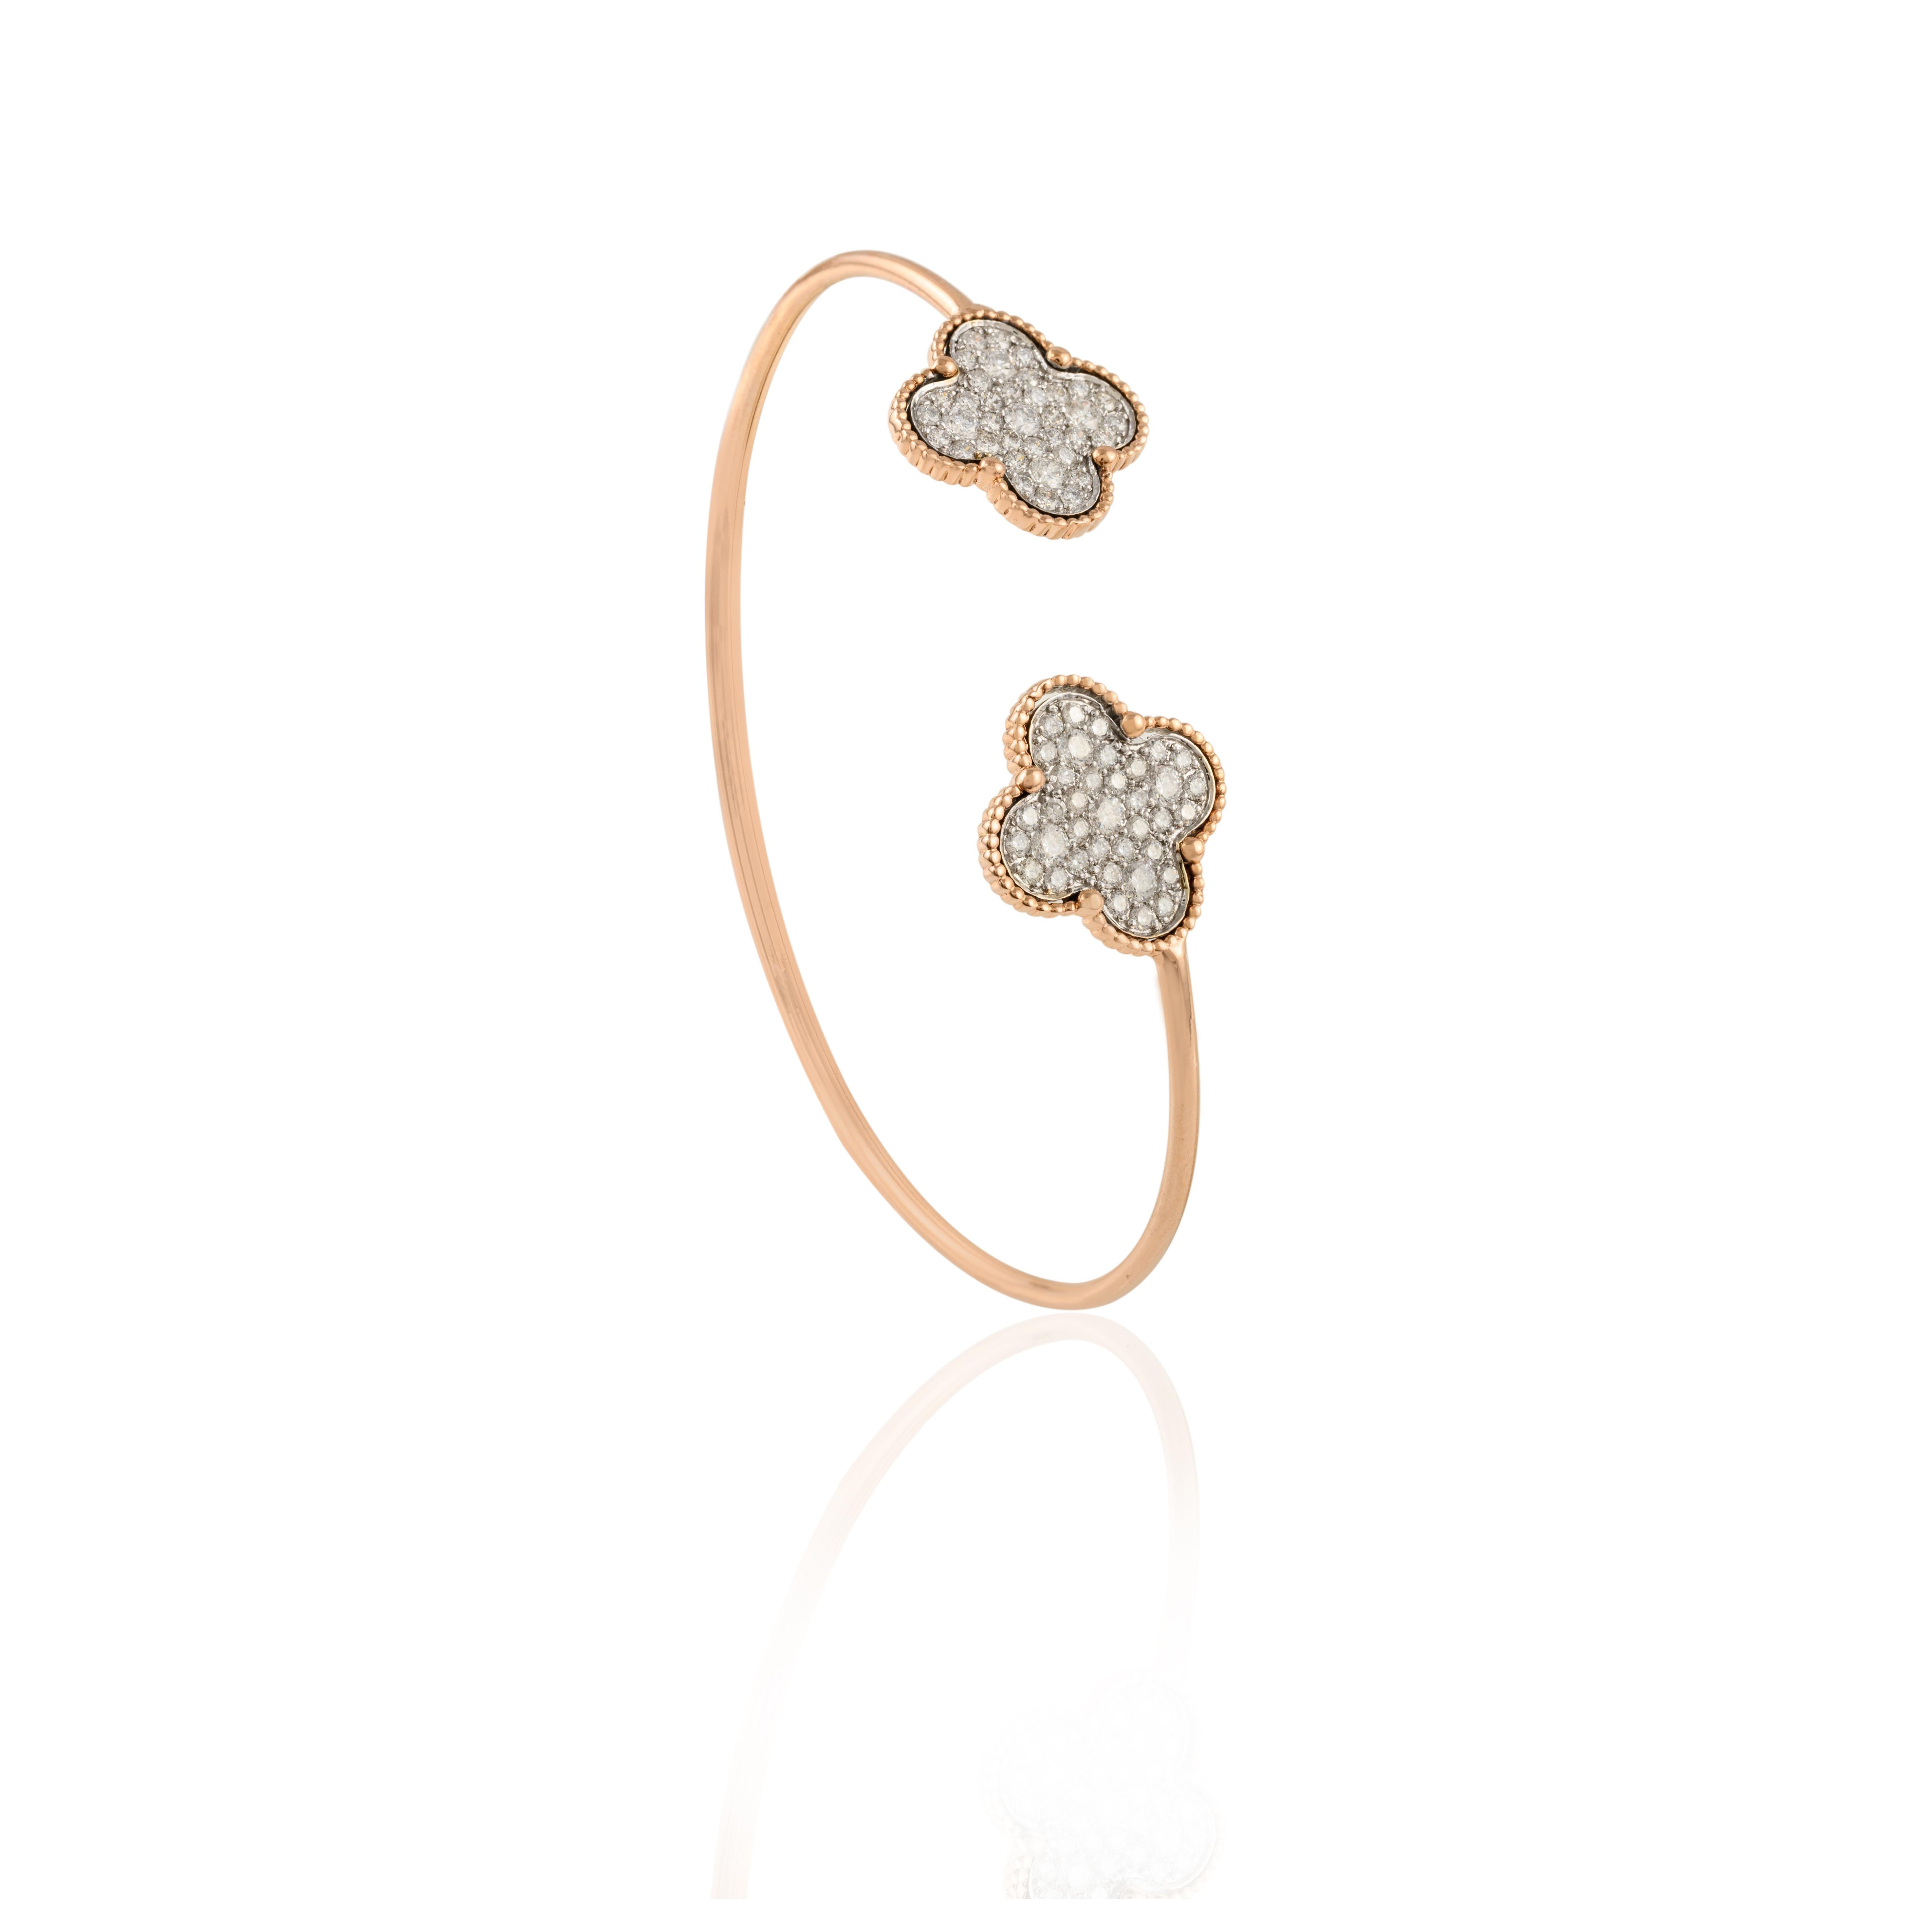 Das Clover Diamond Cuff Bracelet aus 18 Karat Gold ist mit funkelnden natürlichen Diamanten von 1,15 Karat besetzt. 
Der April-Geburtsstein Diamant bringt Liebe, Ruhm, Erfolg und Wohlstand.
Entworfen mit Diamanten in zwei Kleeblättern, die einen